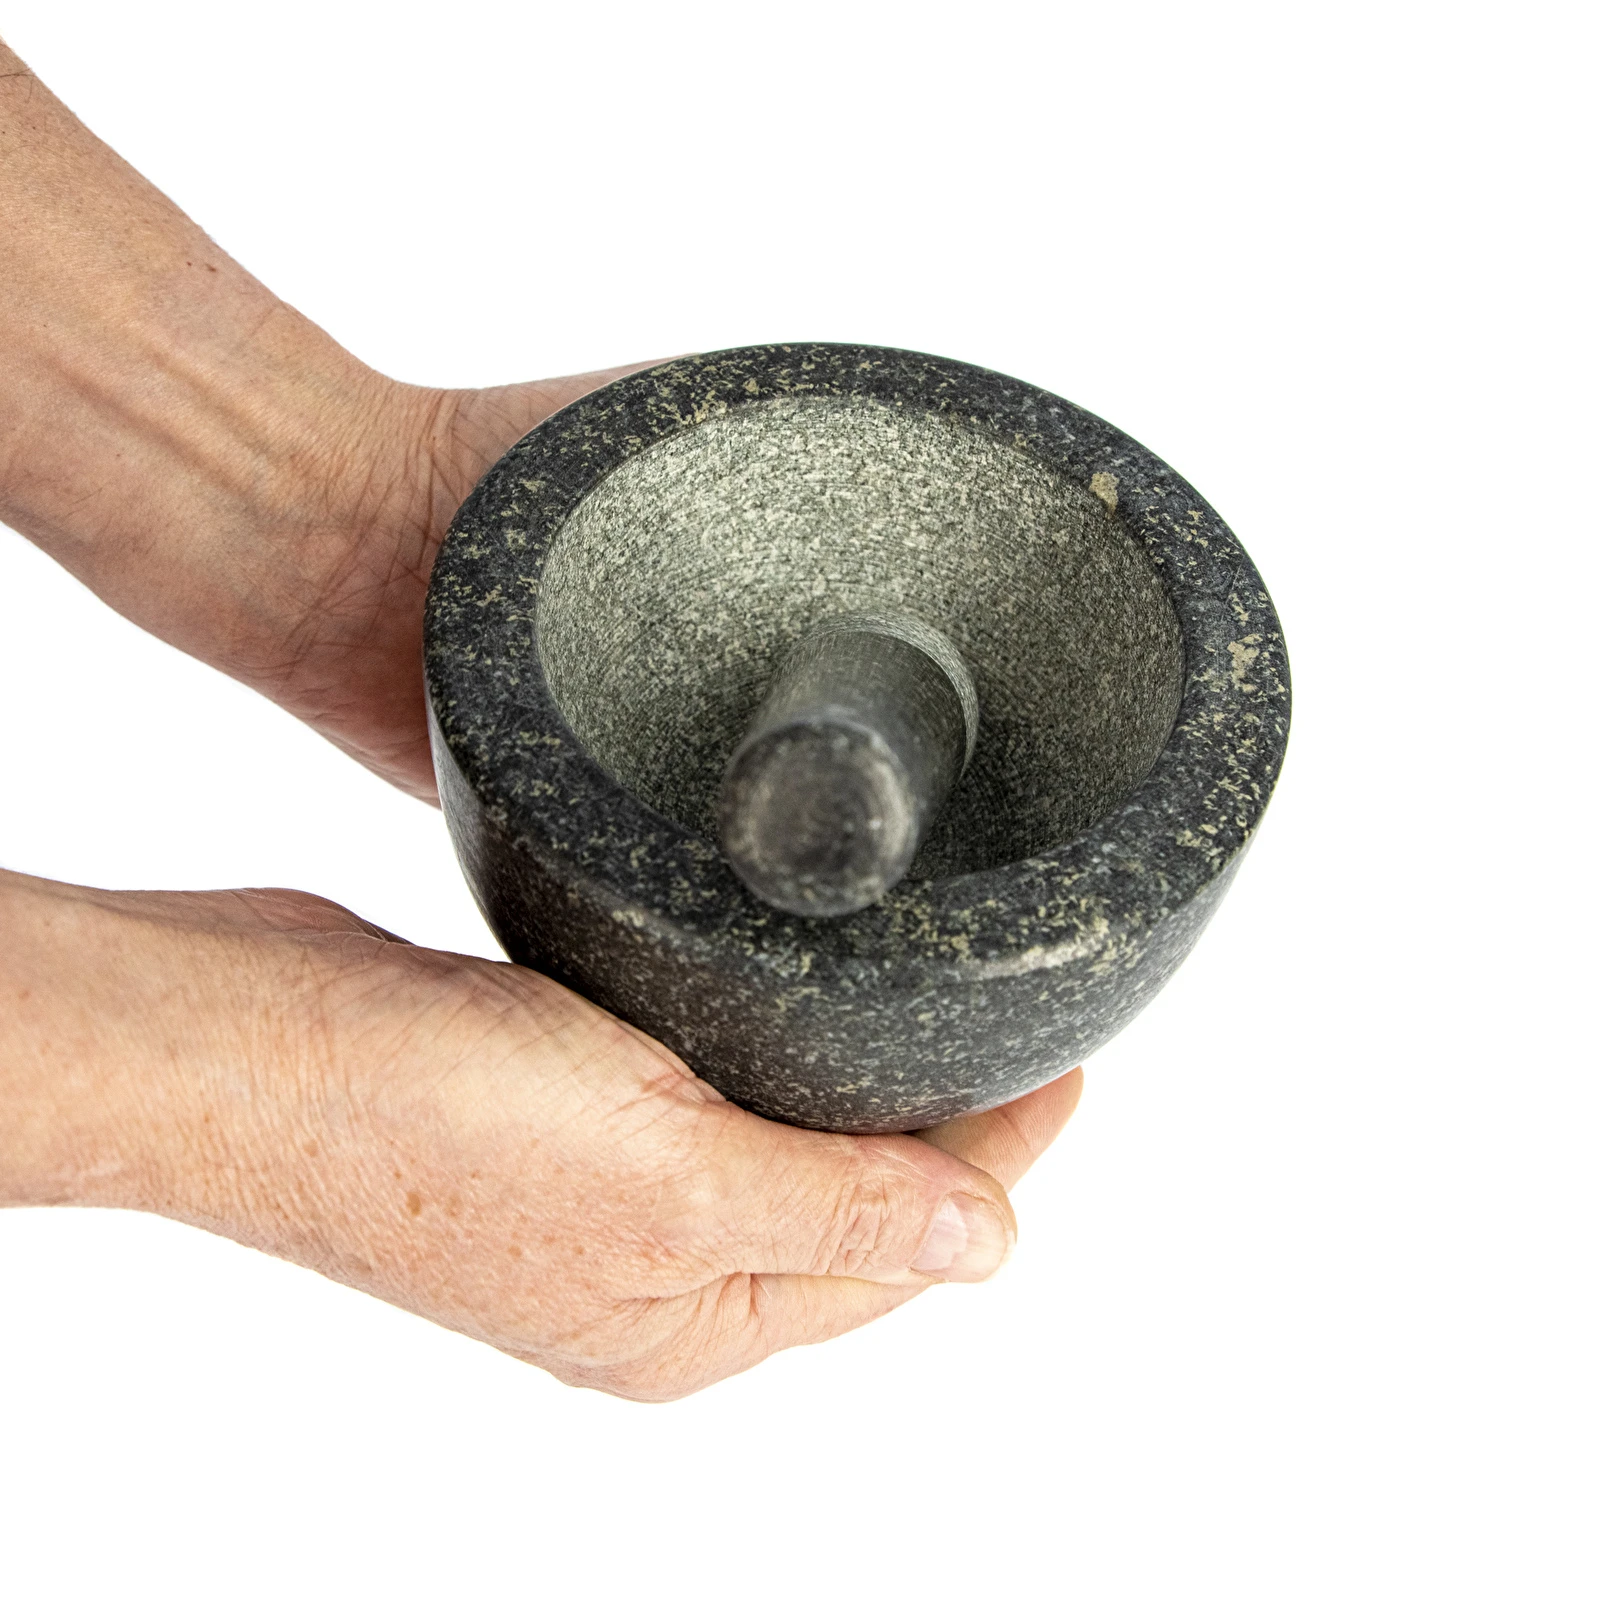 Granite mortar and pestle – stone mortar